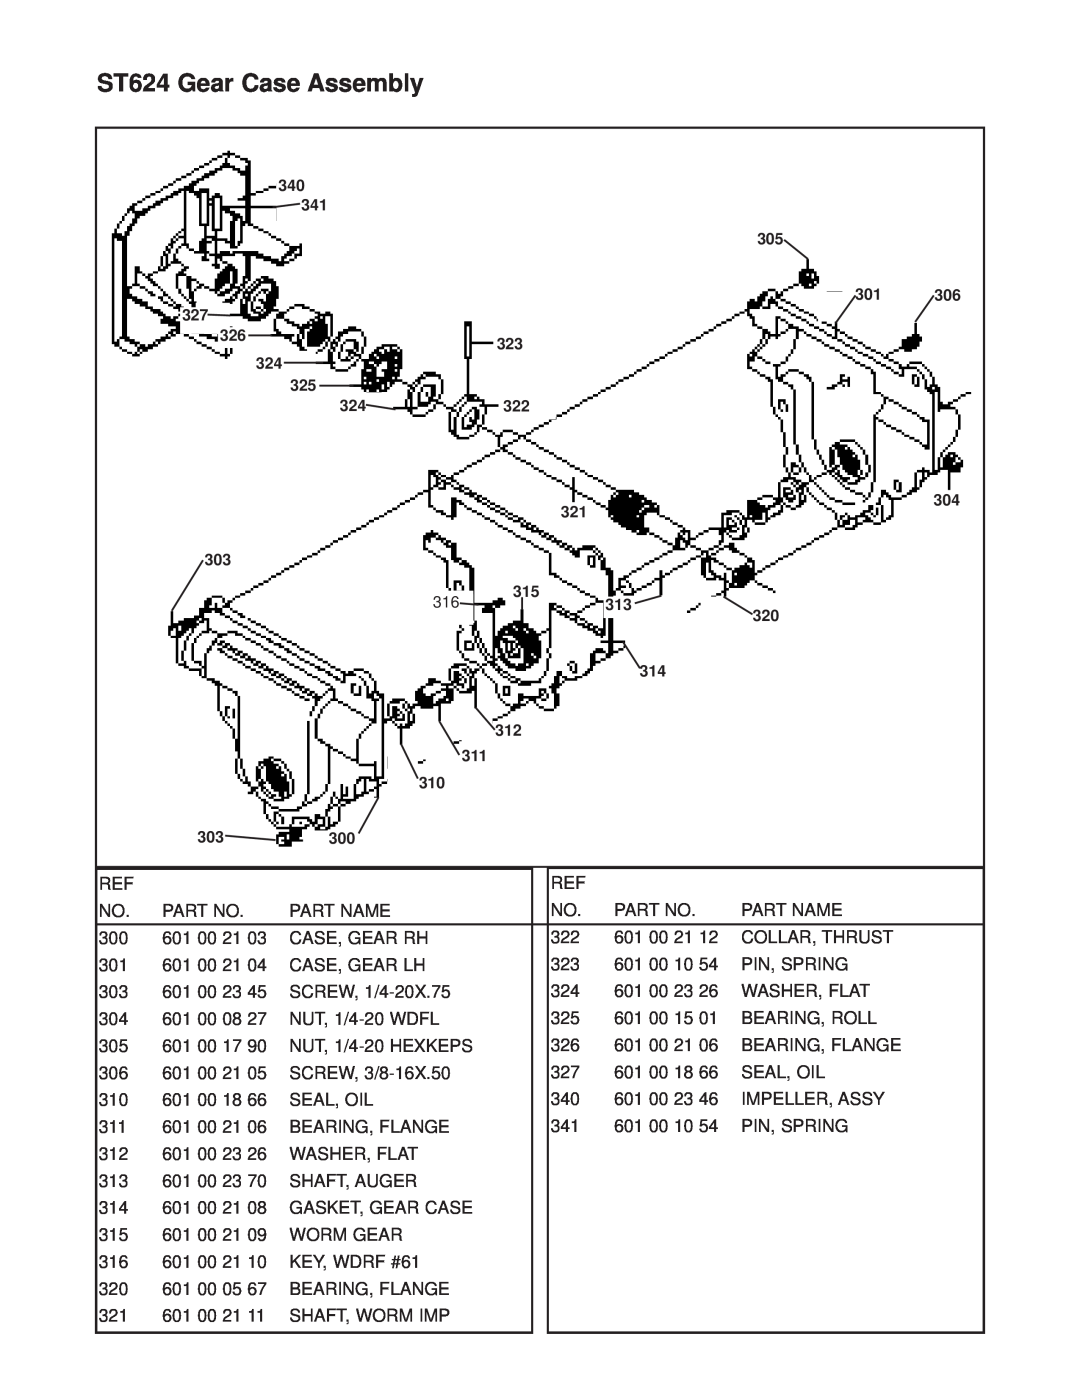 Husqvarna ST624E manual ST624 Gear Case Assembly 